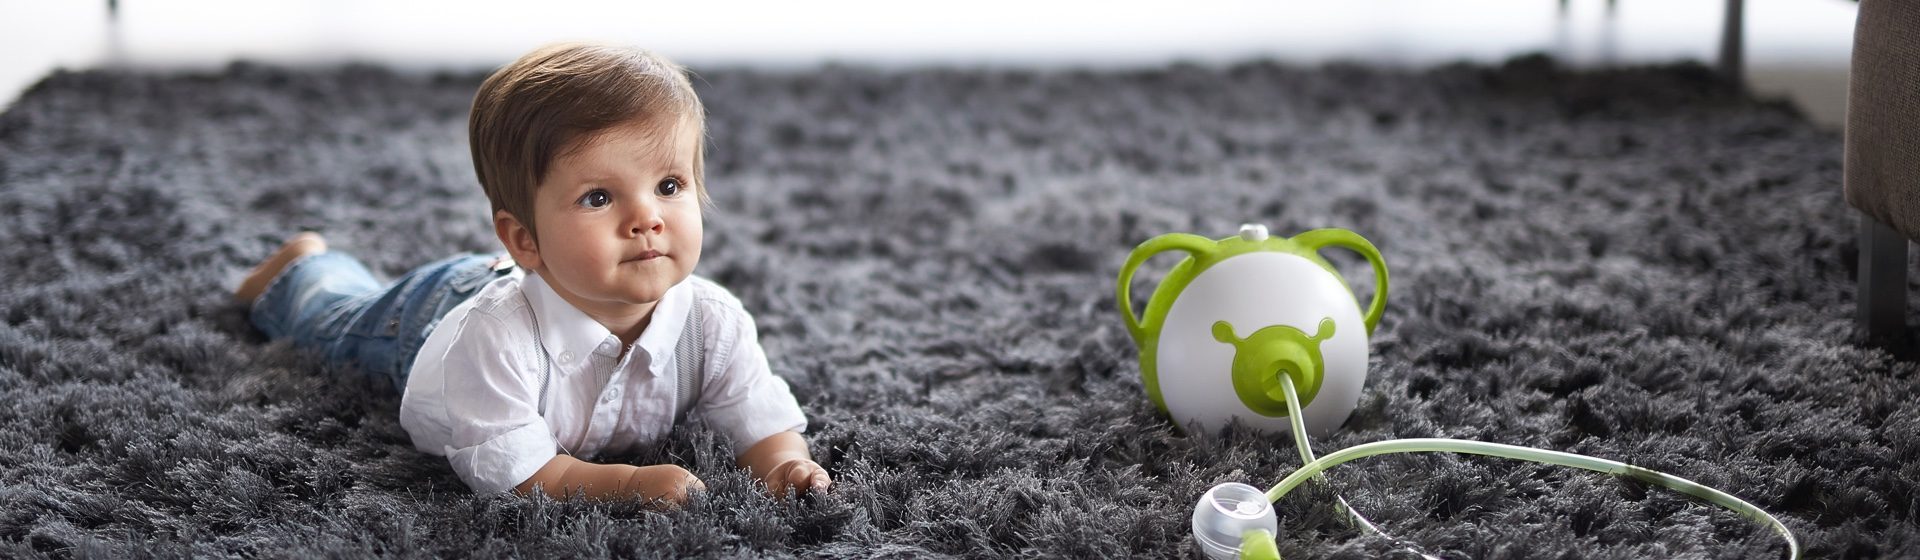 Dowiedz się więcej o elektrycznym aspiratorze do nosa dla niemowląt Nosiboo Pro, służącym do usuwania wydzieliny z małych nosków